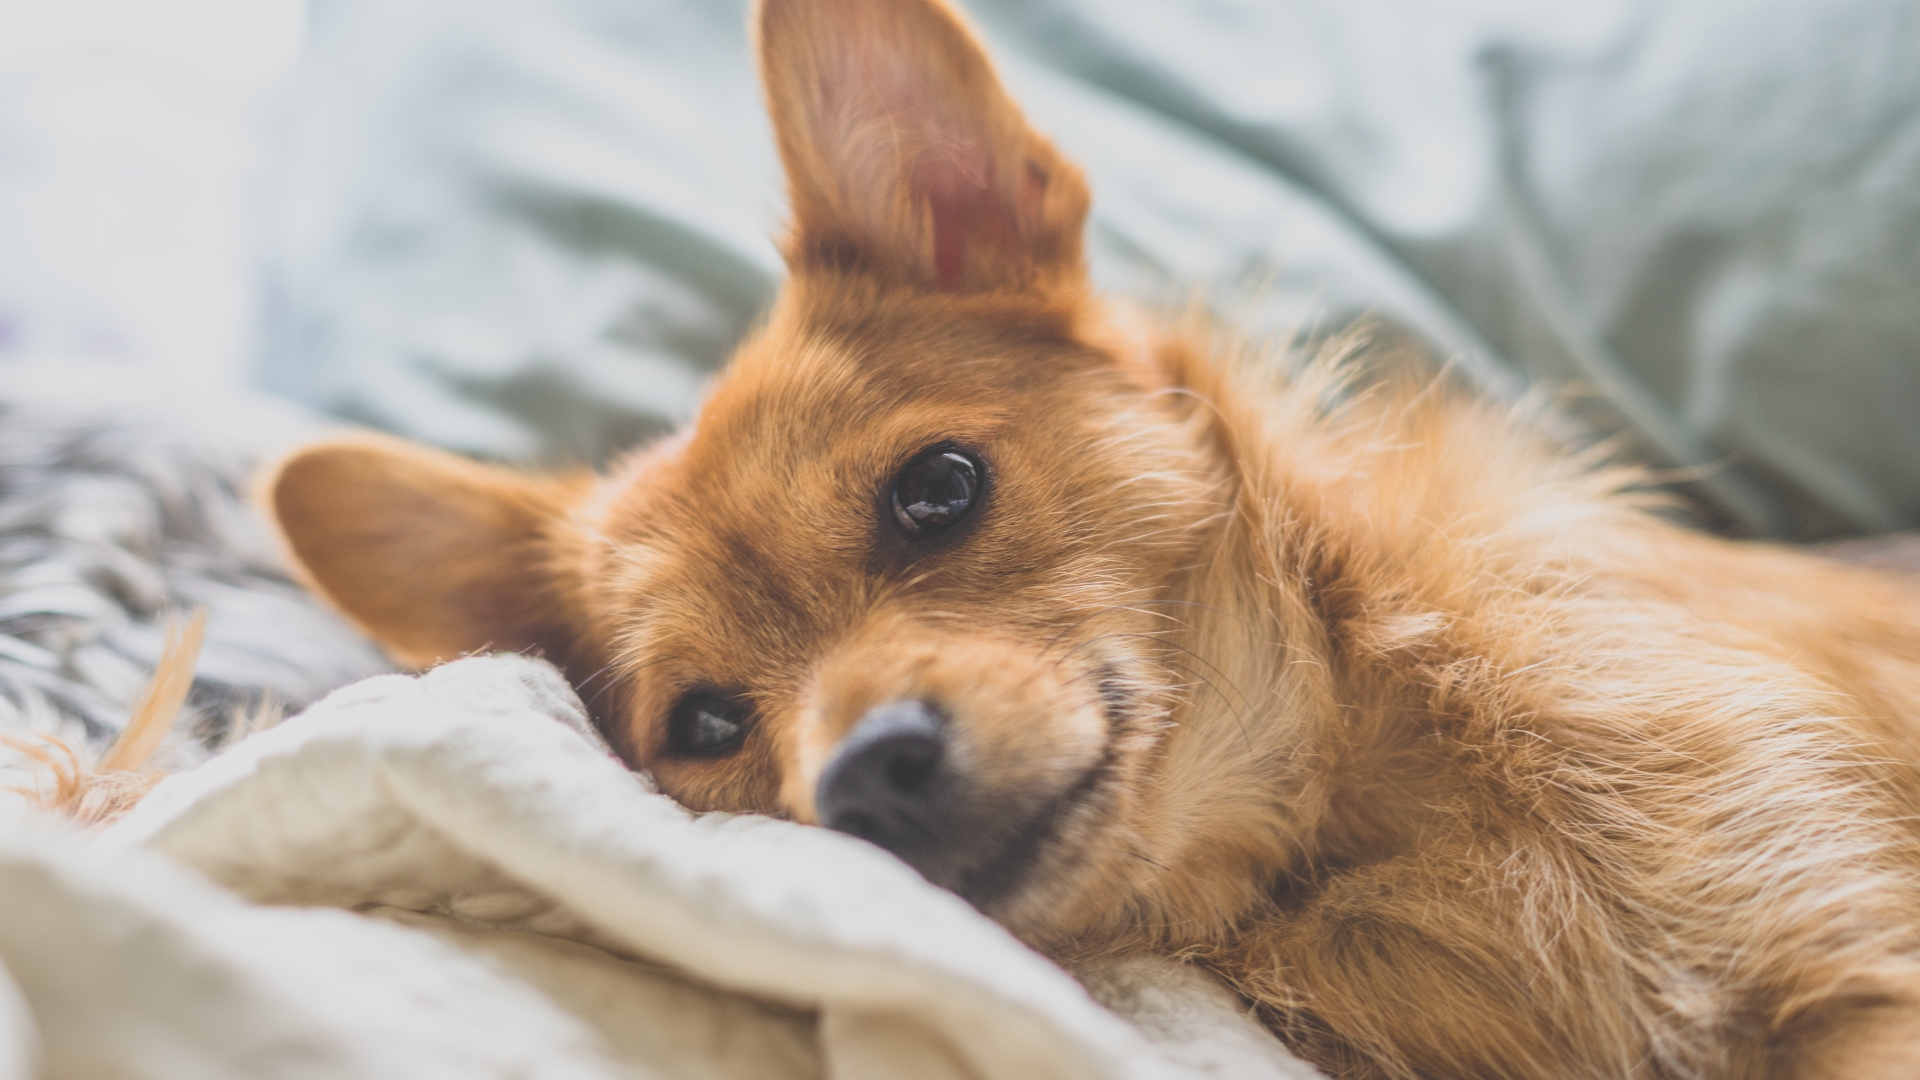 Dog Behaviors 101: Why Do Dogs 'Nest'?